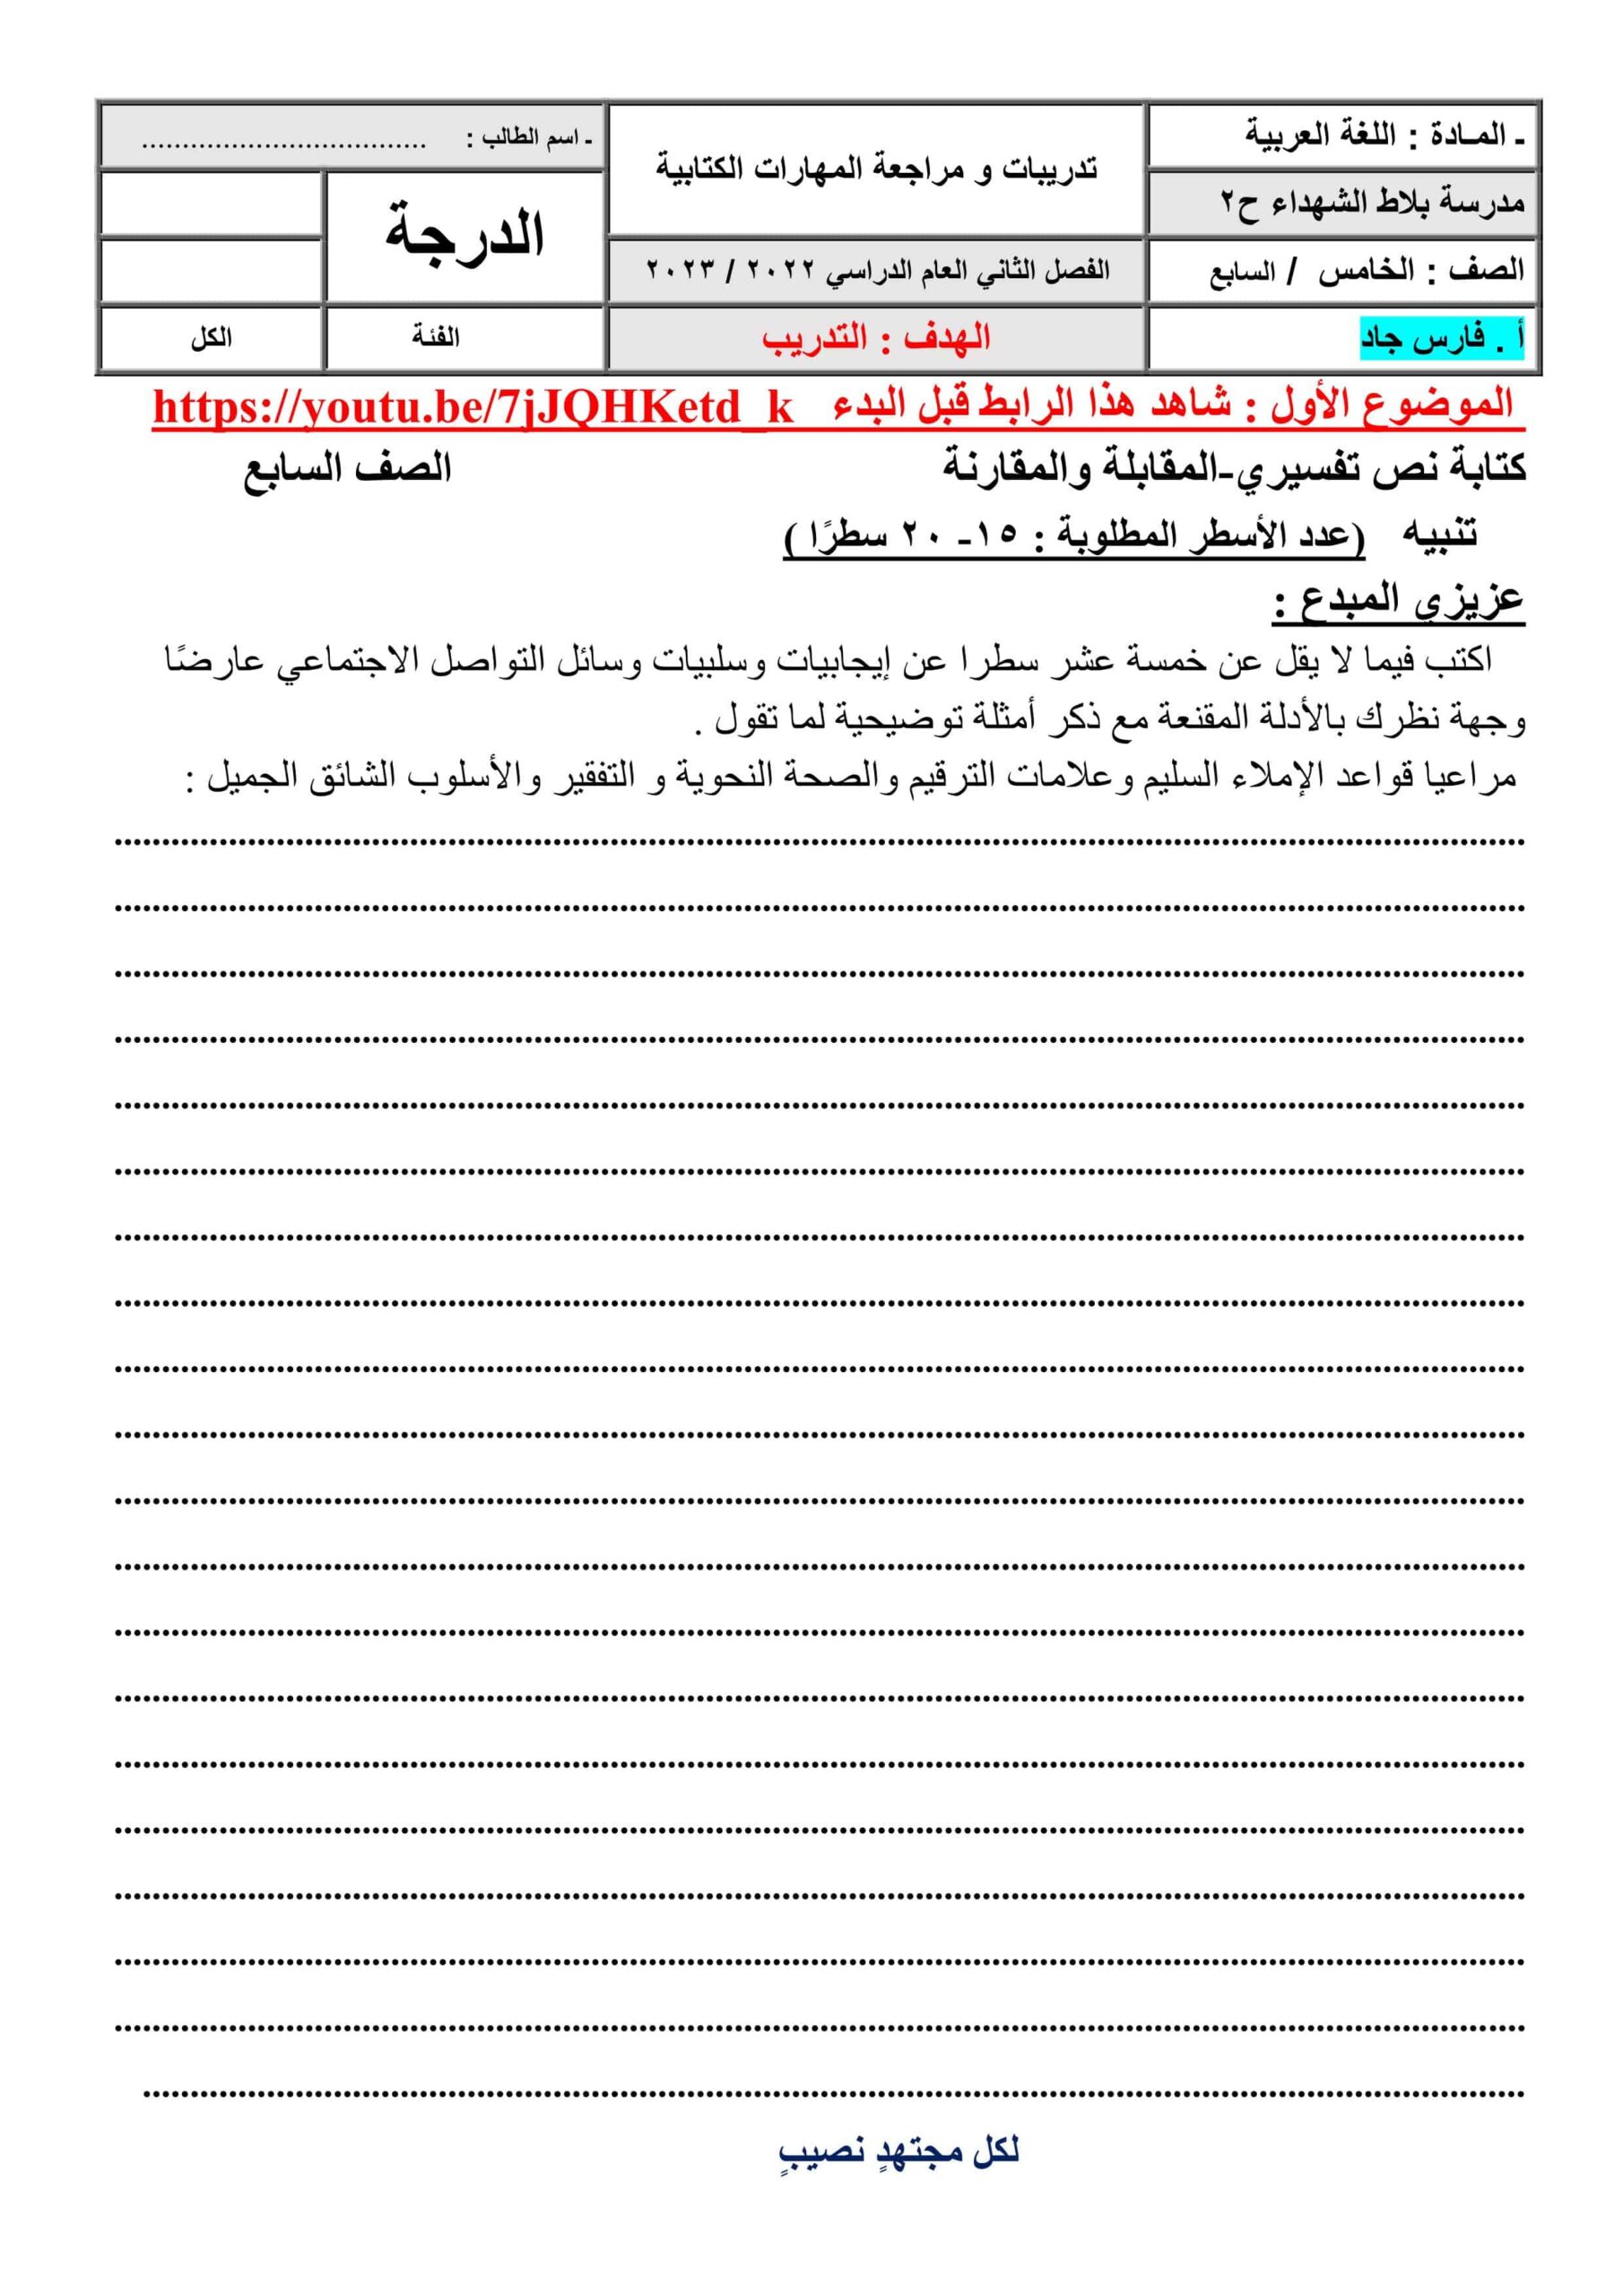 تدريبات و مراجعة المهارات الكتابية اللغة العربية الصف الخامس